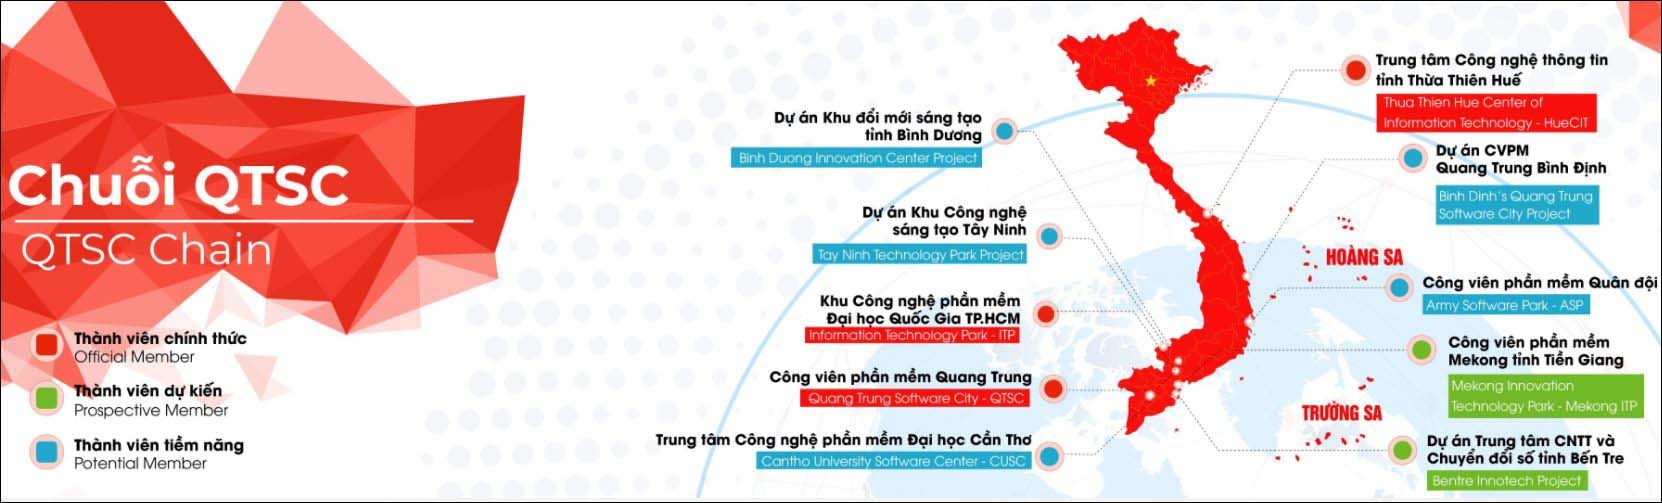 Mô hình Chuỗi công viên phần mềm Quang Trung được thí điểm đến hết năm 2023